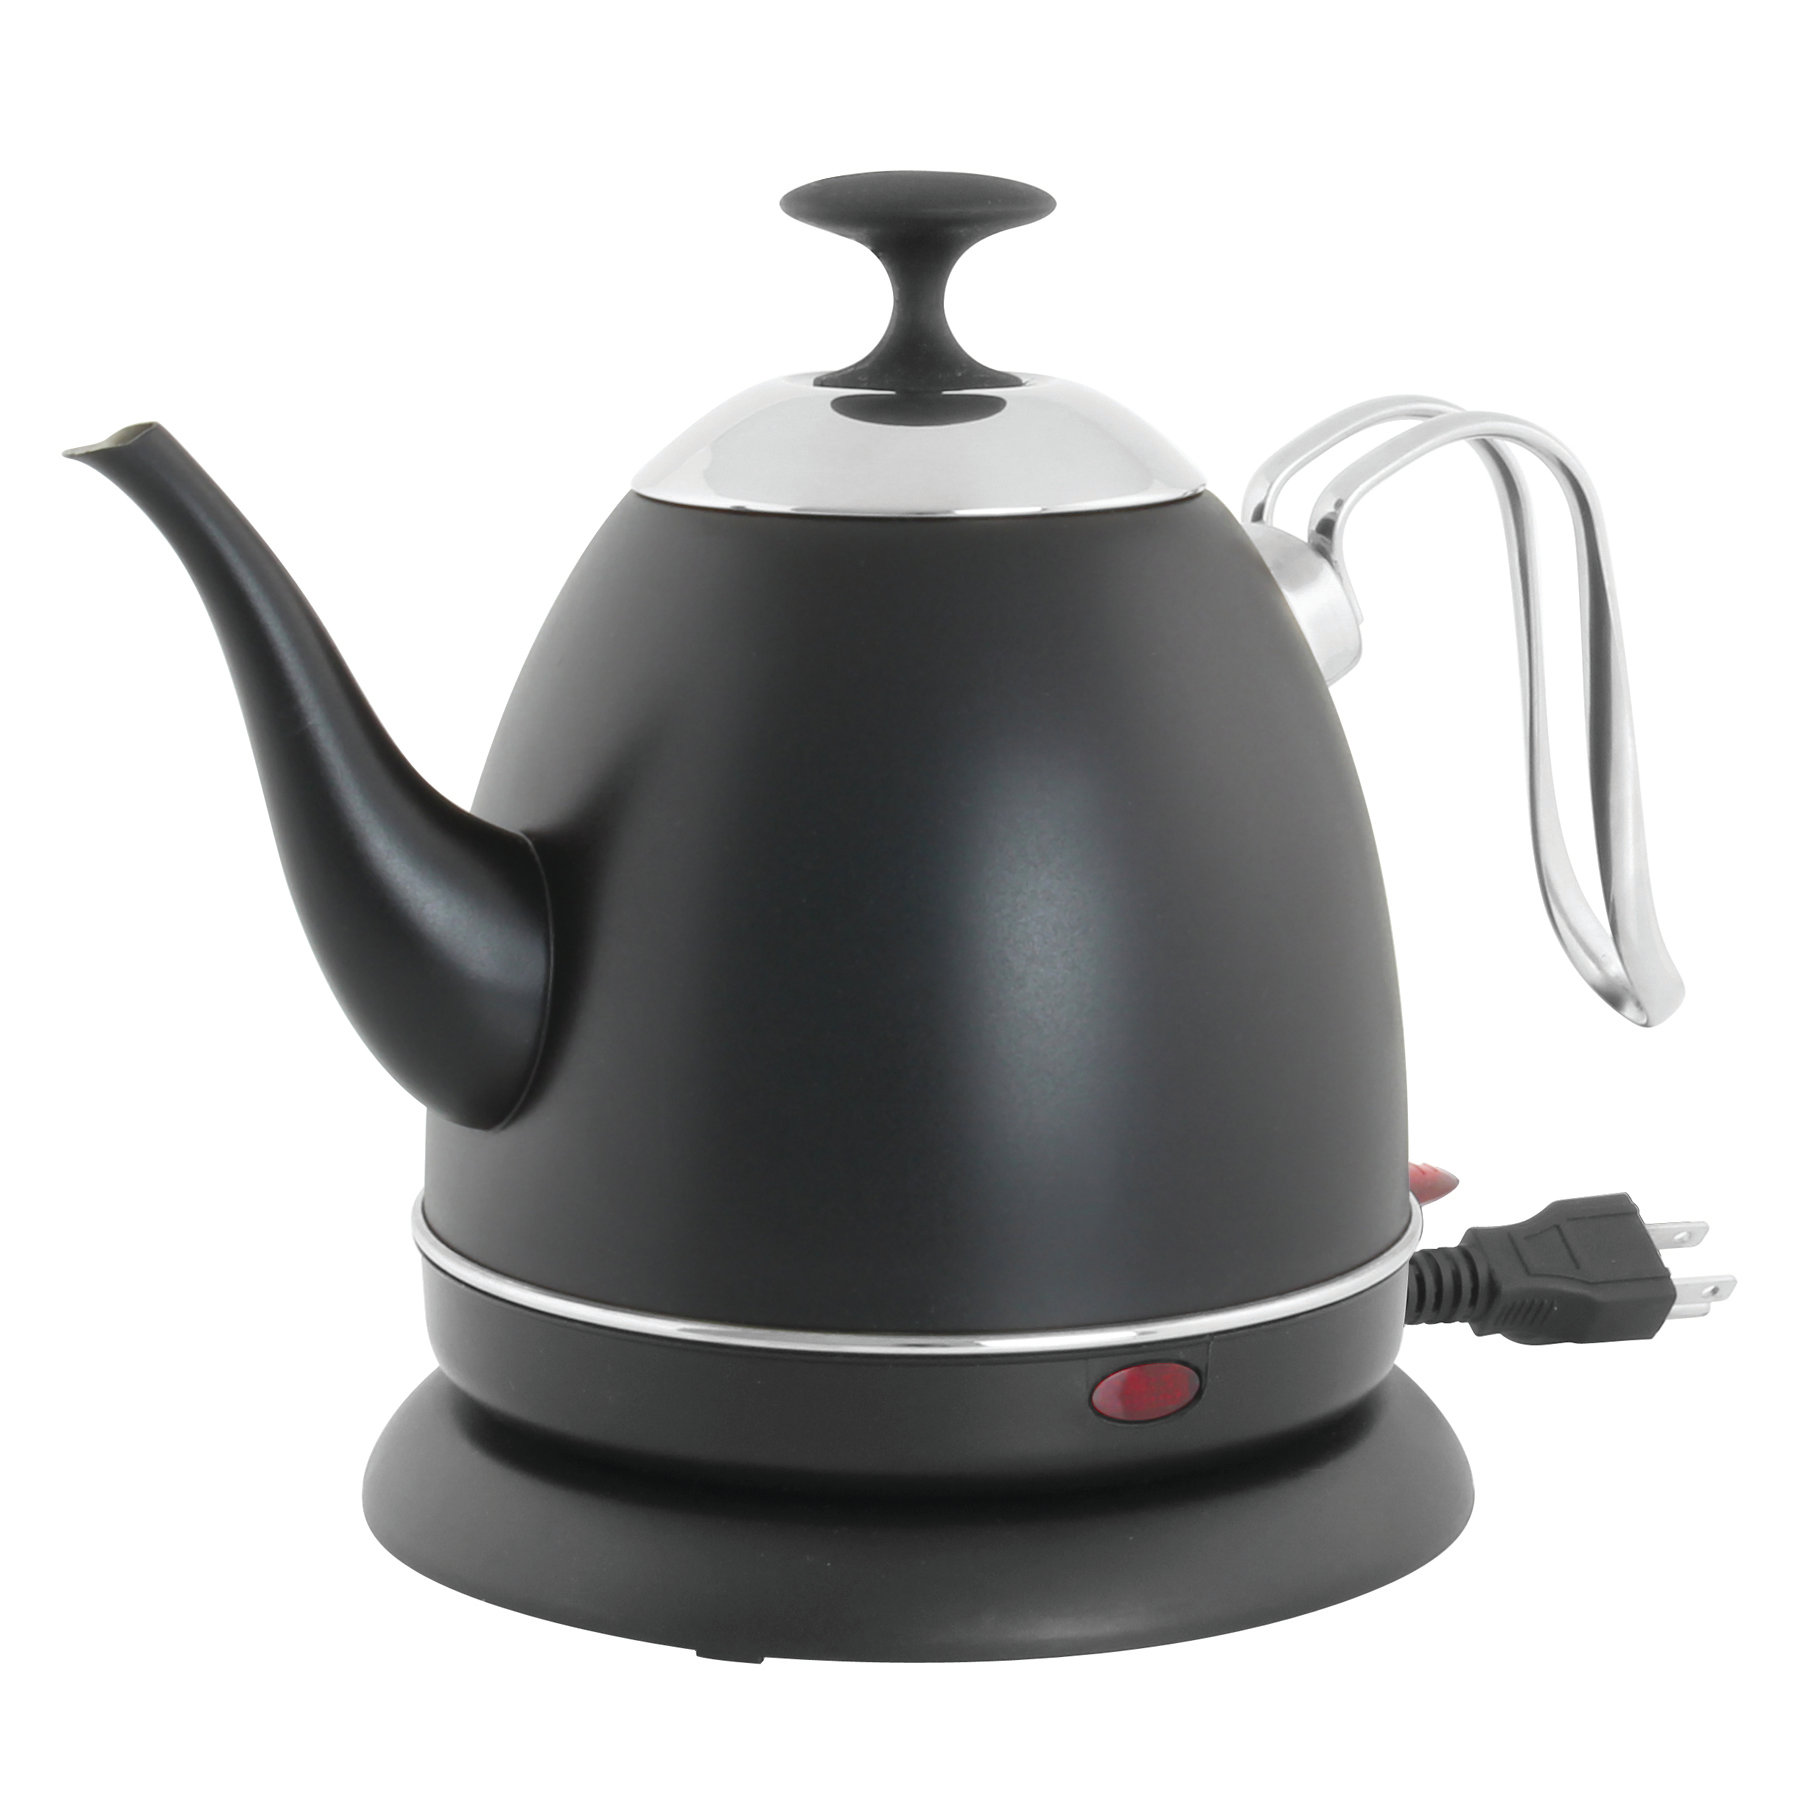 https://assets.wfcdn.com/im/77222487/compr-r85/8683/86831128/chantal-stainless-steel-electric-tea-kettle.jpg